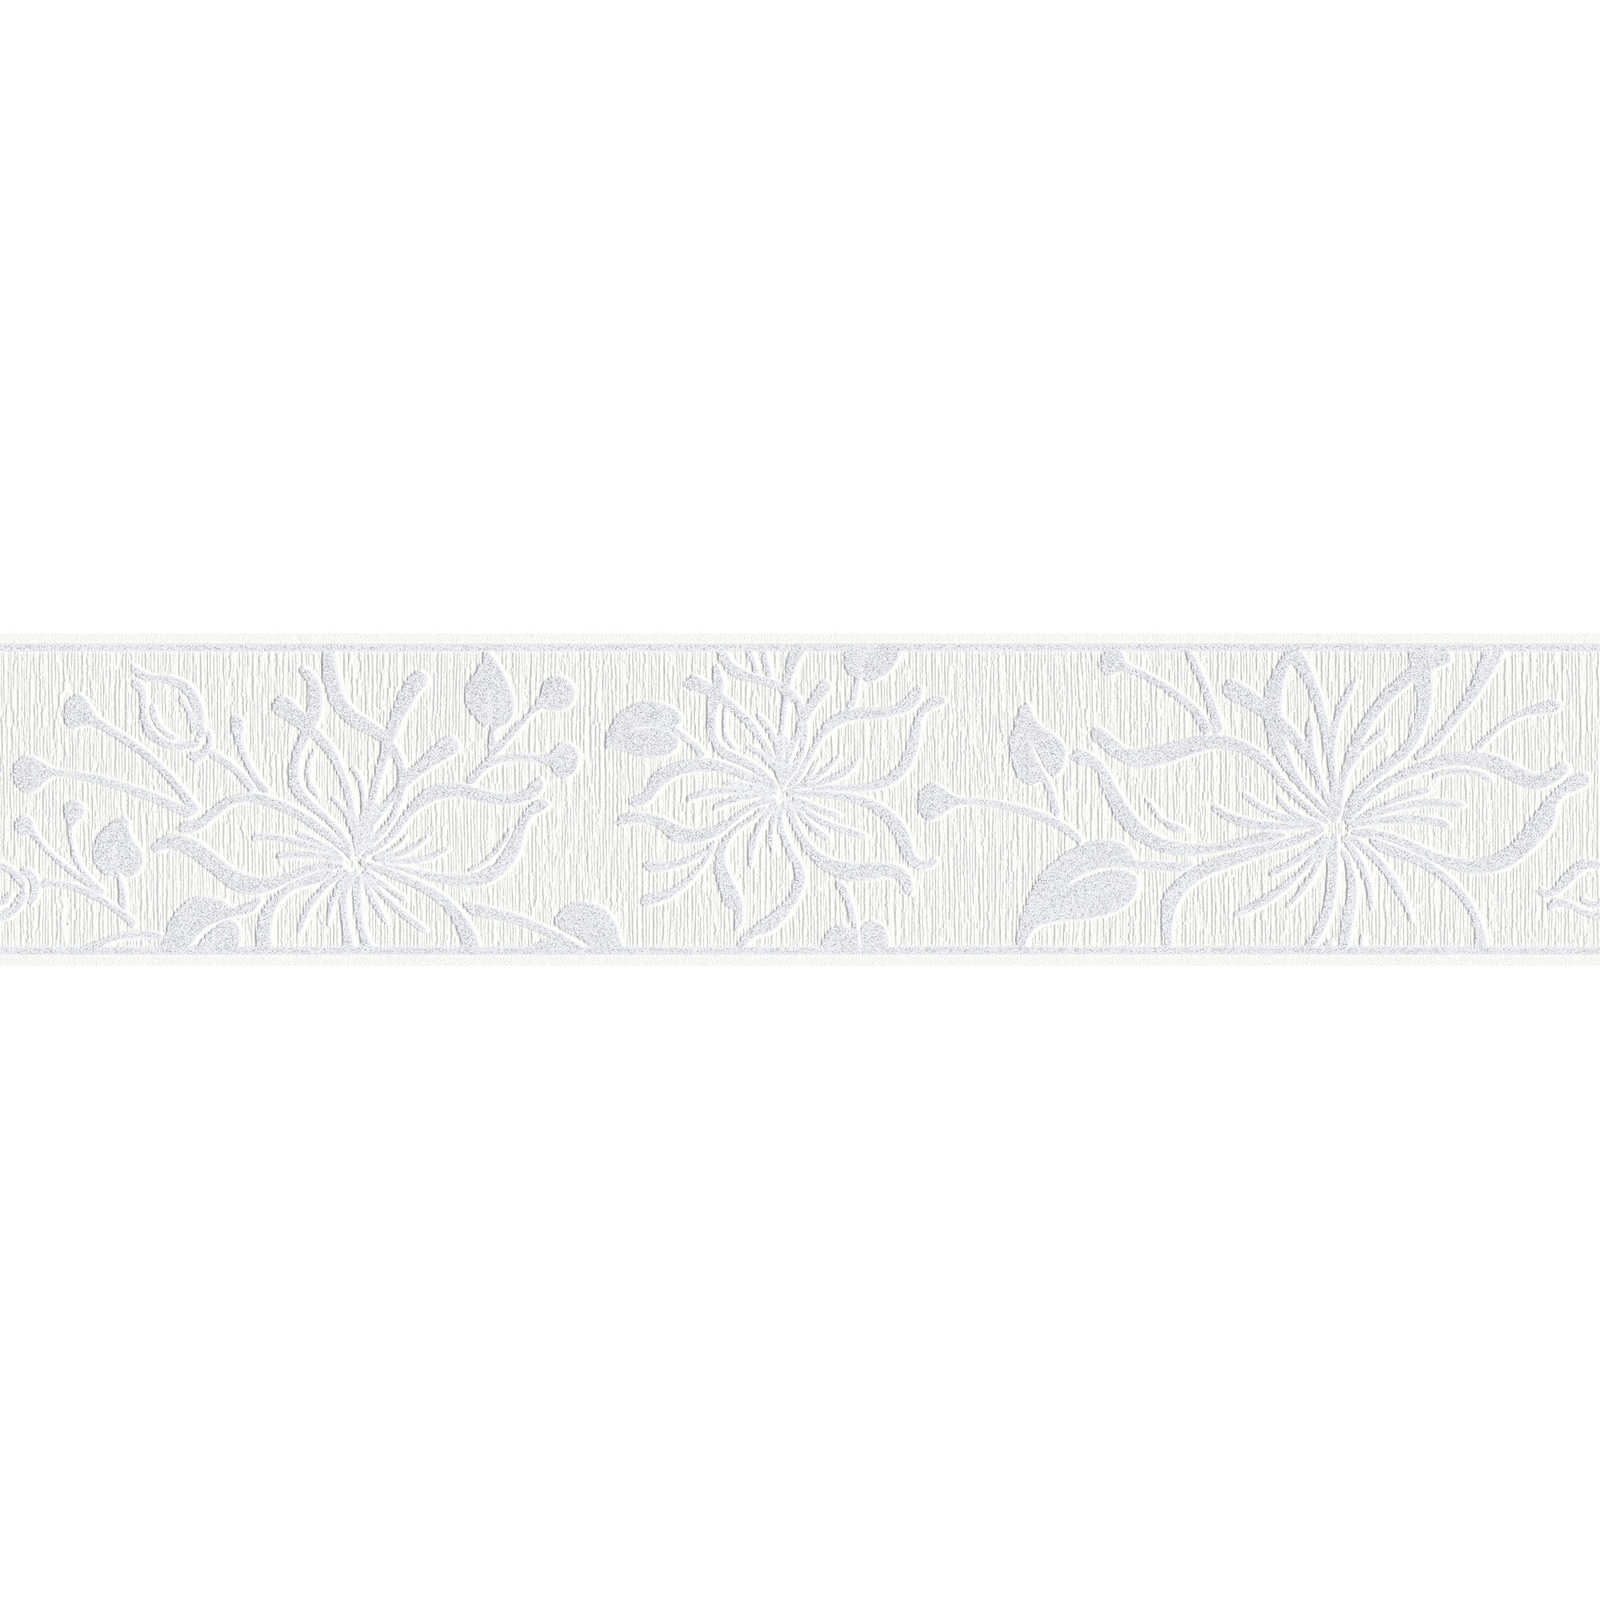         Tapetenborte Weiß mit Blumenmuster & Strukturdesign
    